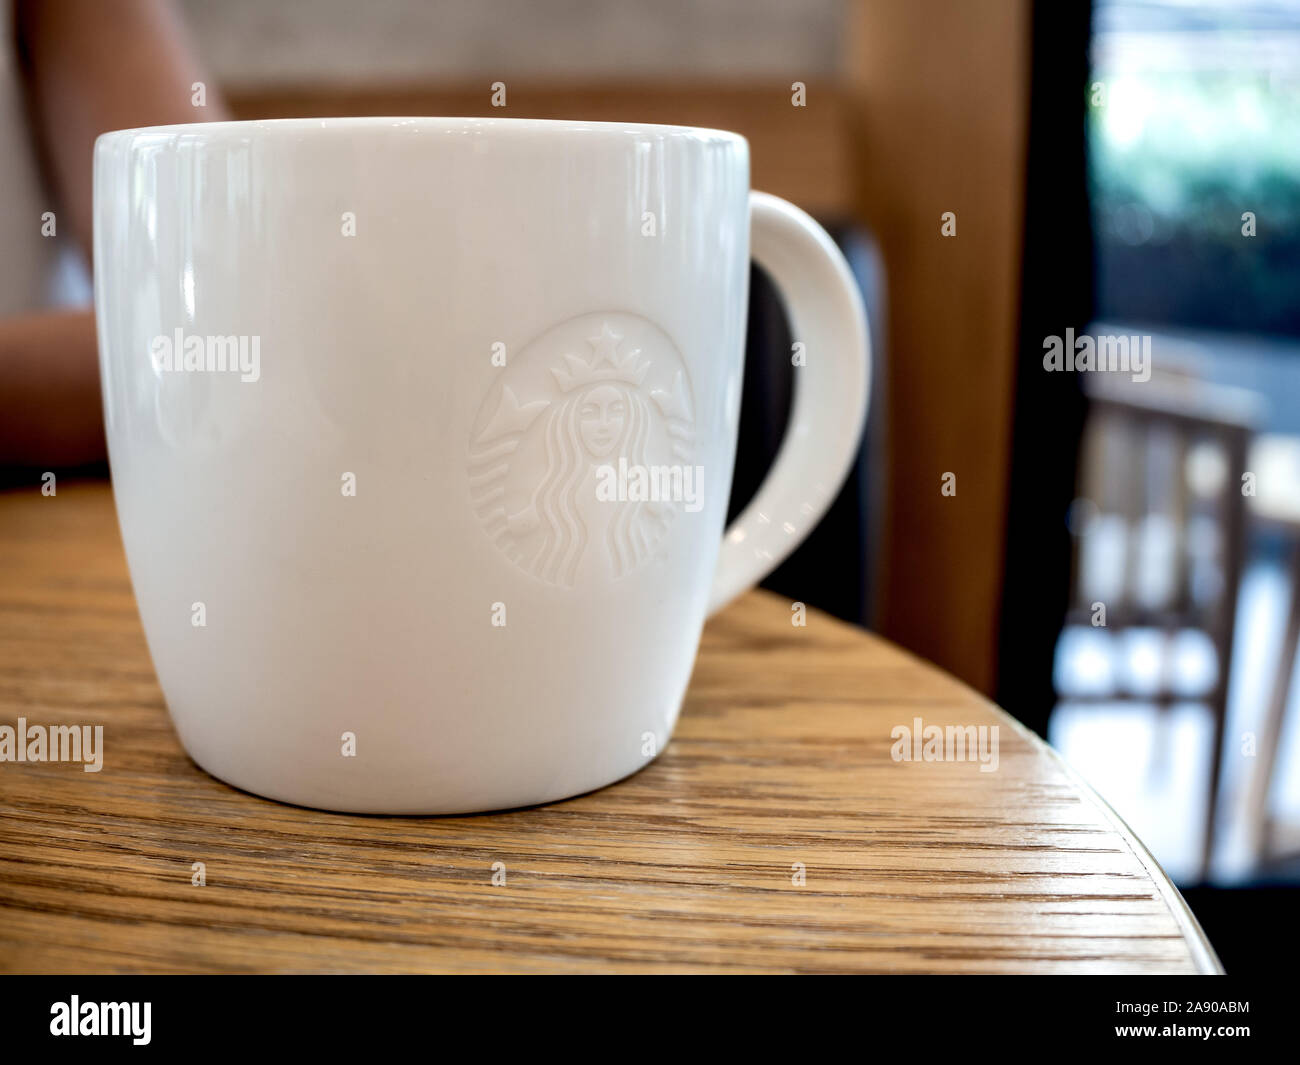 Taza Térmica de Cerámica con Rayas Diseño de Starbucks en CandyCo Tienda  Online